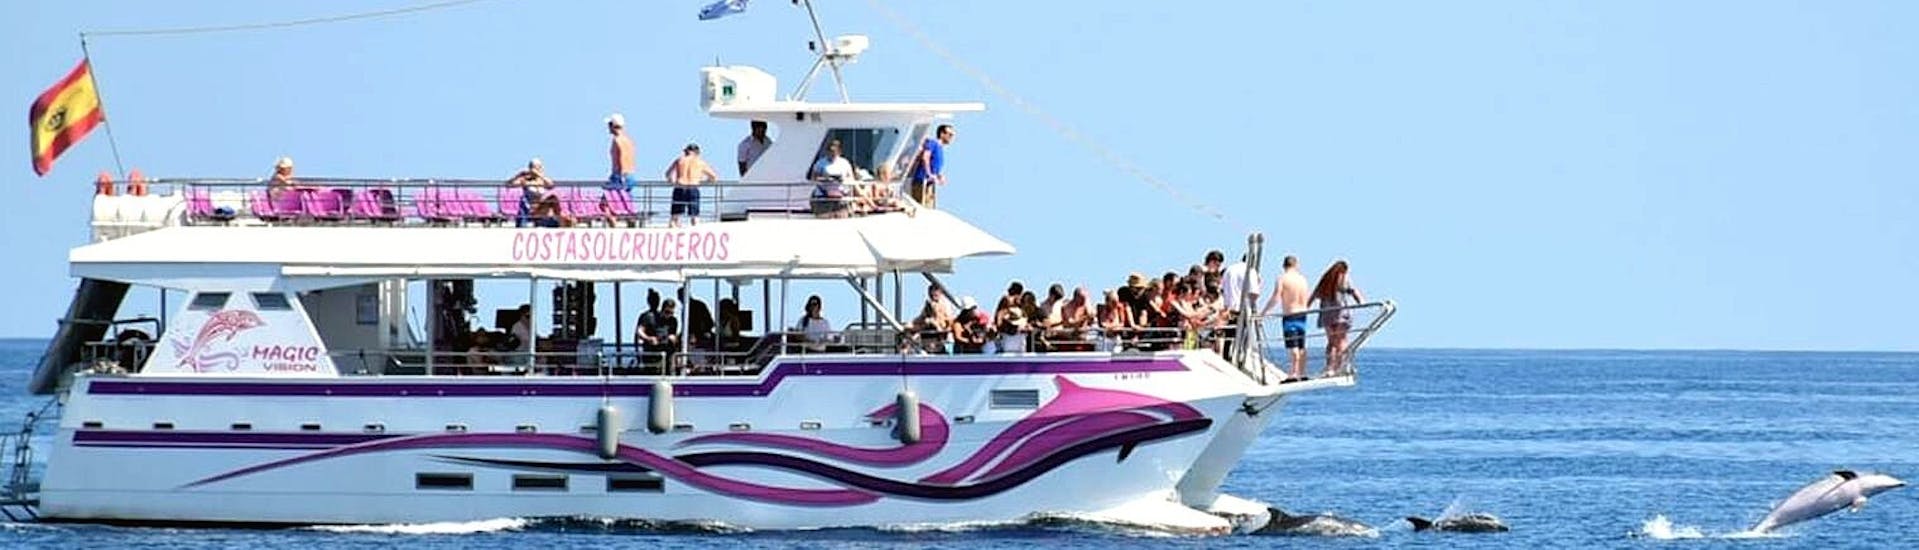 Der Katamaran Magic Vision fährt in der Bucht von Benalmadena mit Teilnehmern, die sich an Bord amüsieren, während einer Katamaranfahrt in Benalmádena mit Delphinbeobachtung mit Costasol Cruceros.